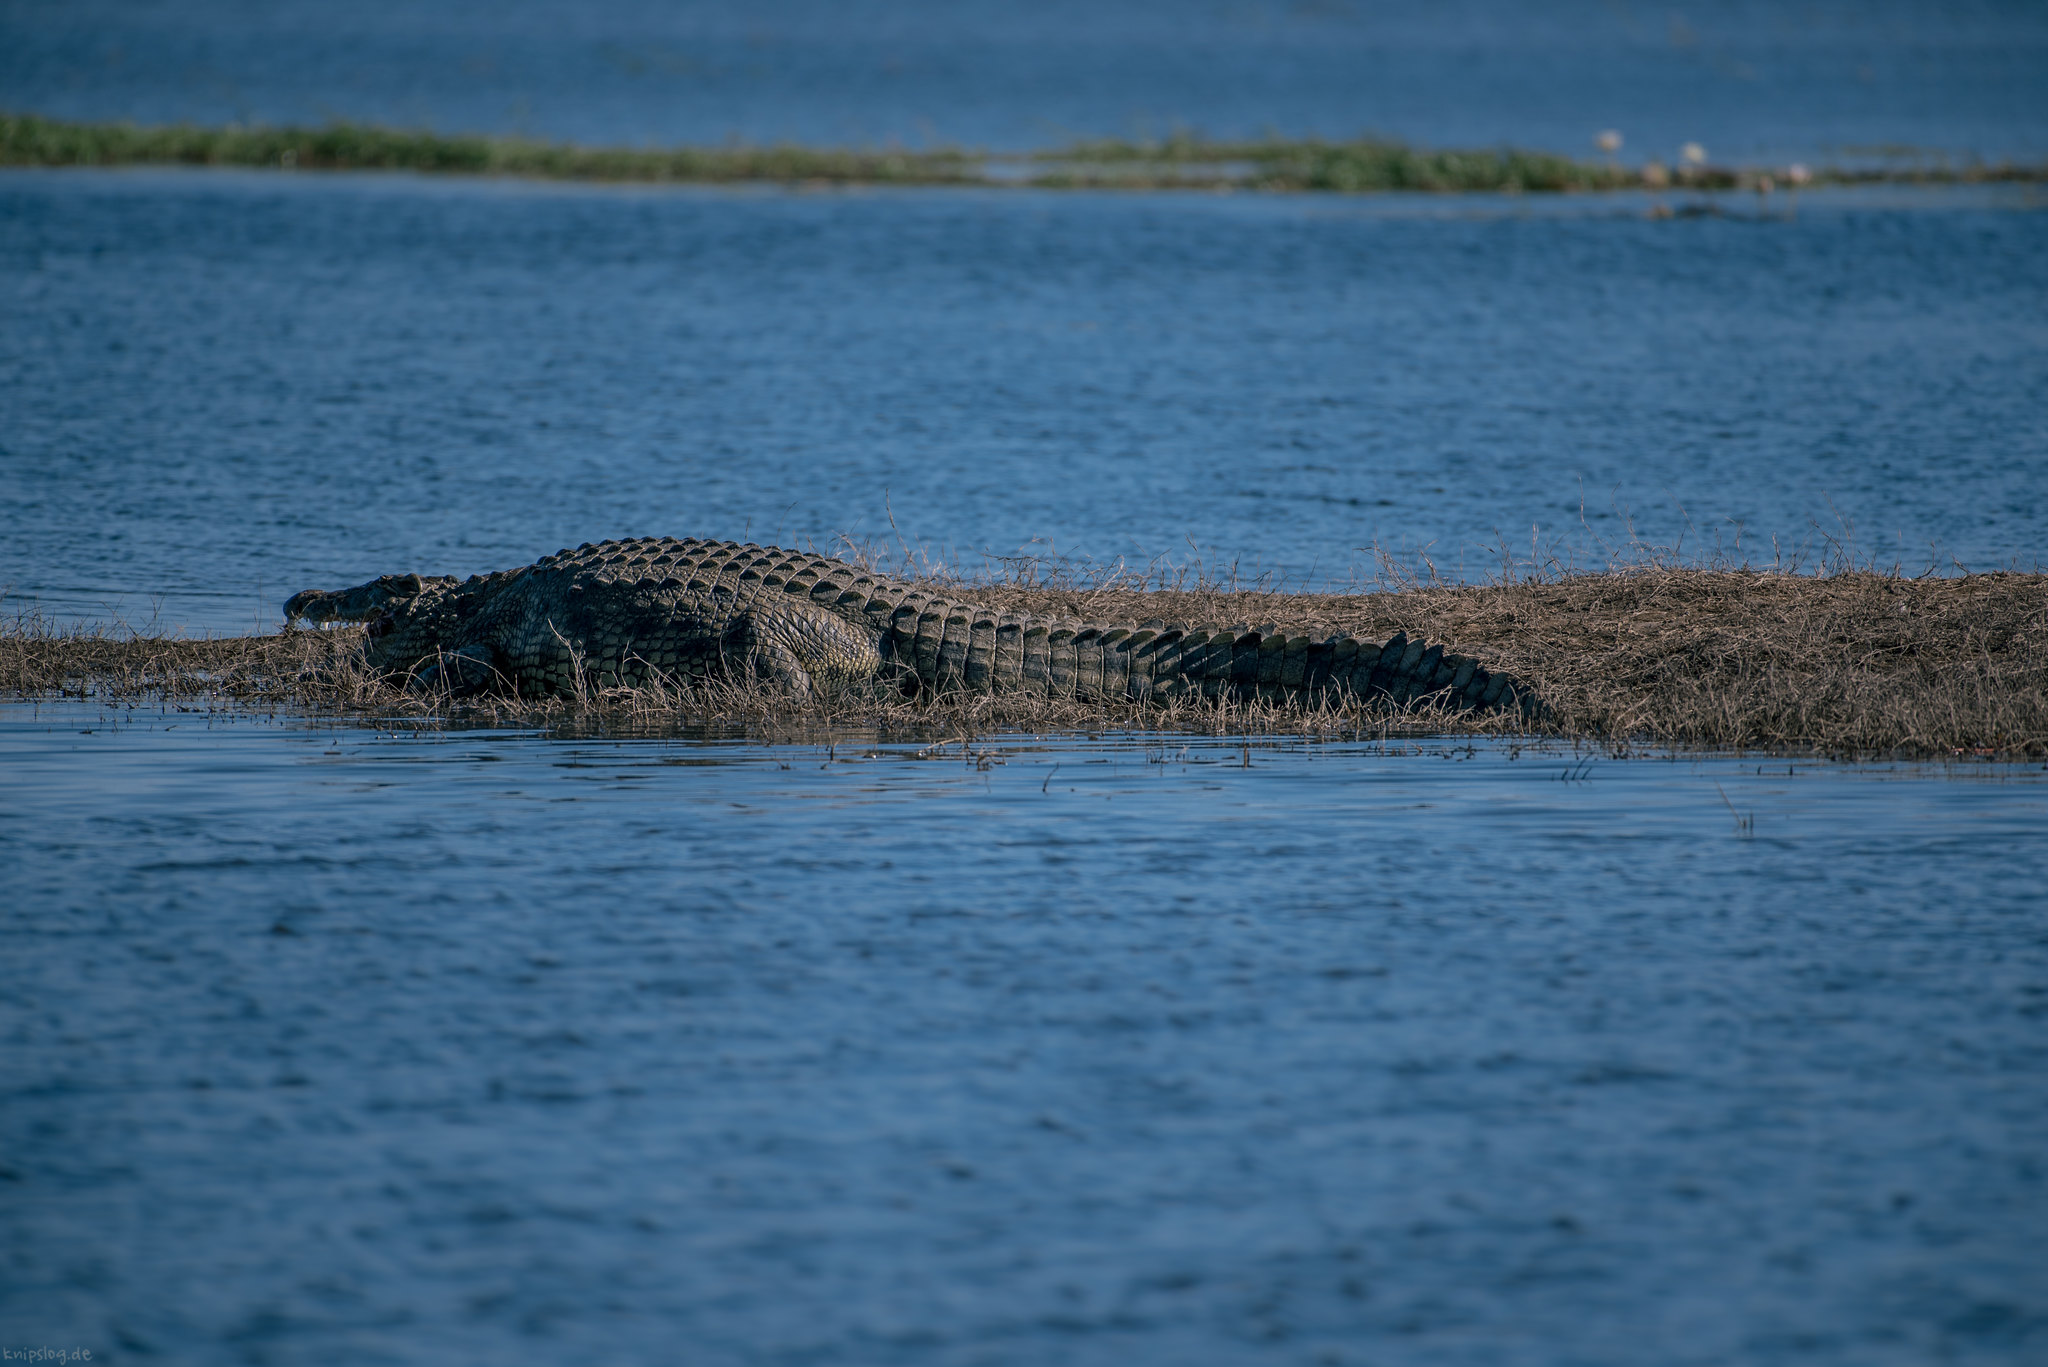 Relaxing crocodile